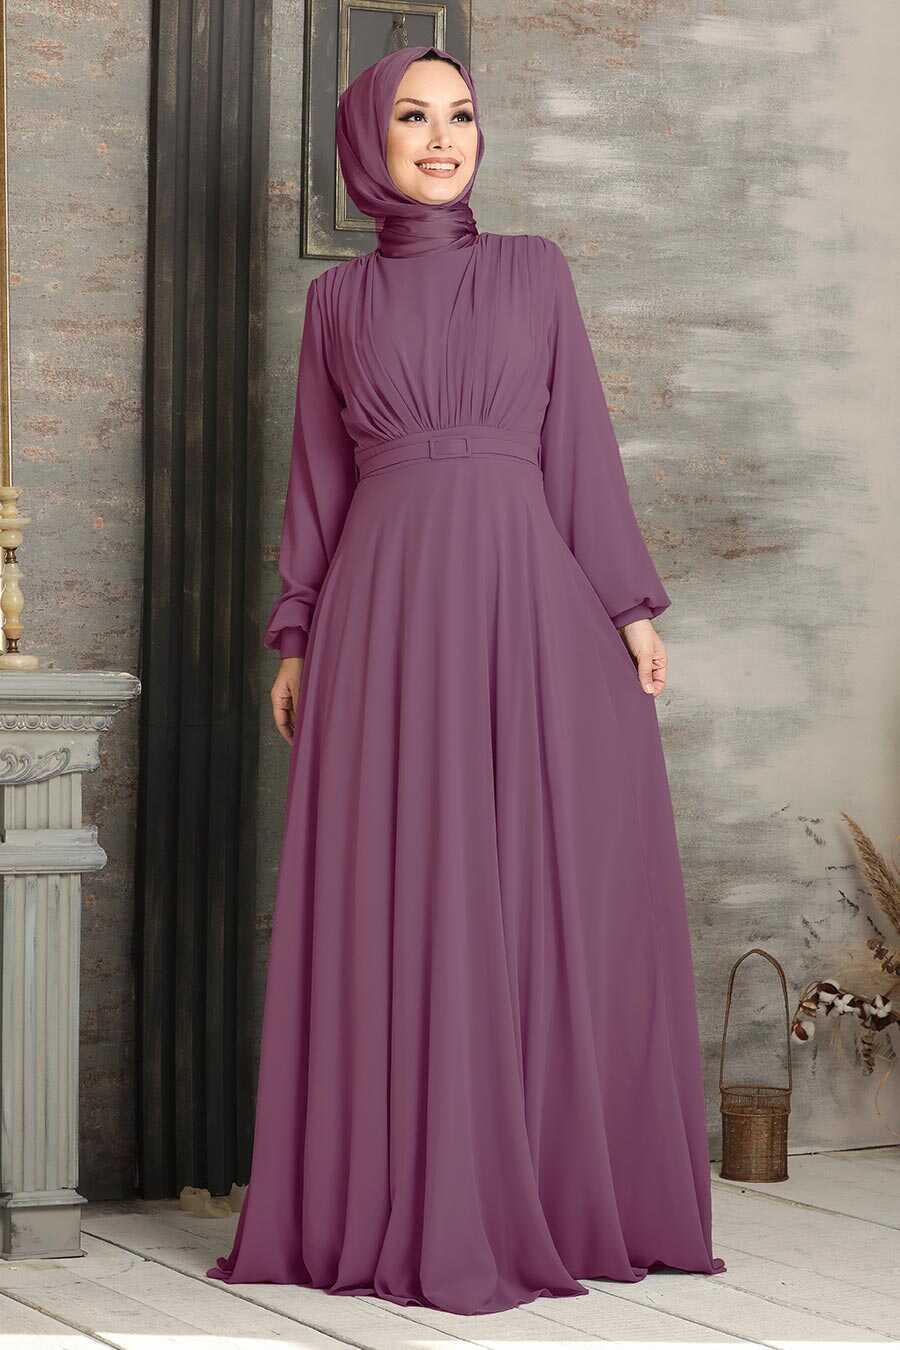 Neva Style - Plus Size Dusty Rose Islamic Clothing Evening Dress 5422GK